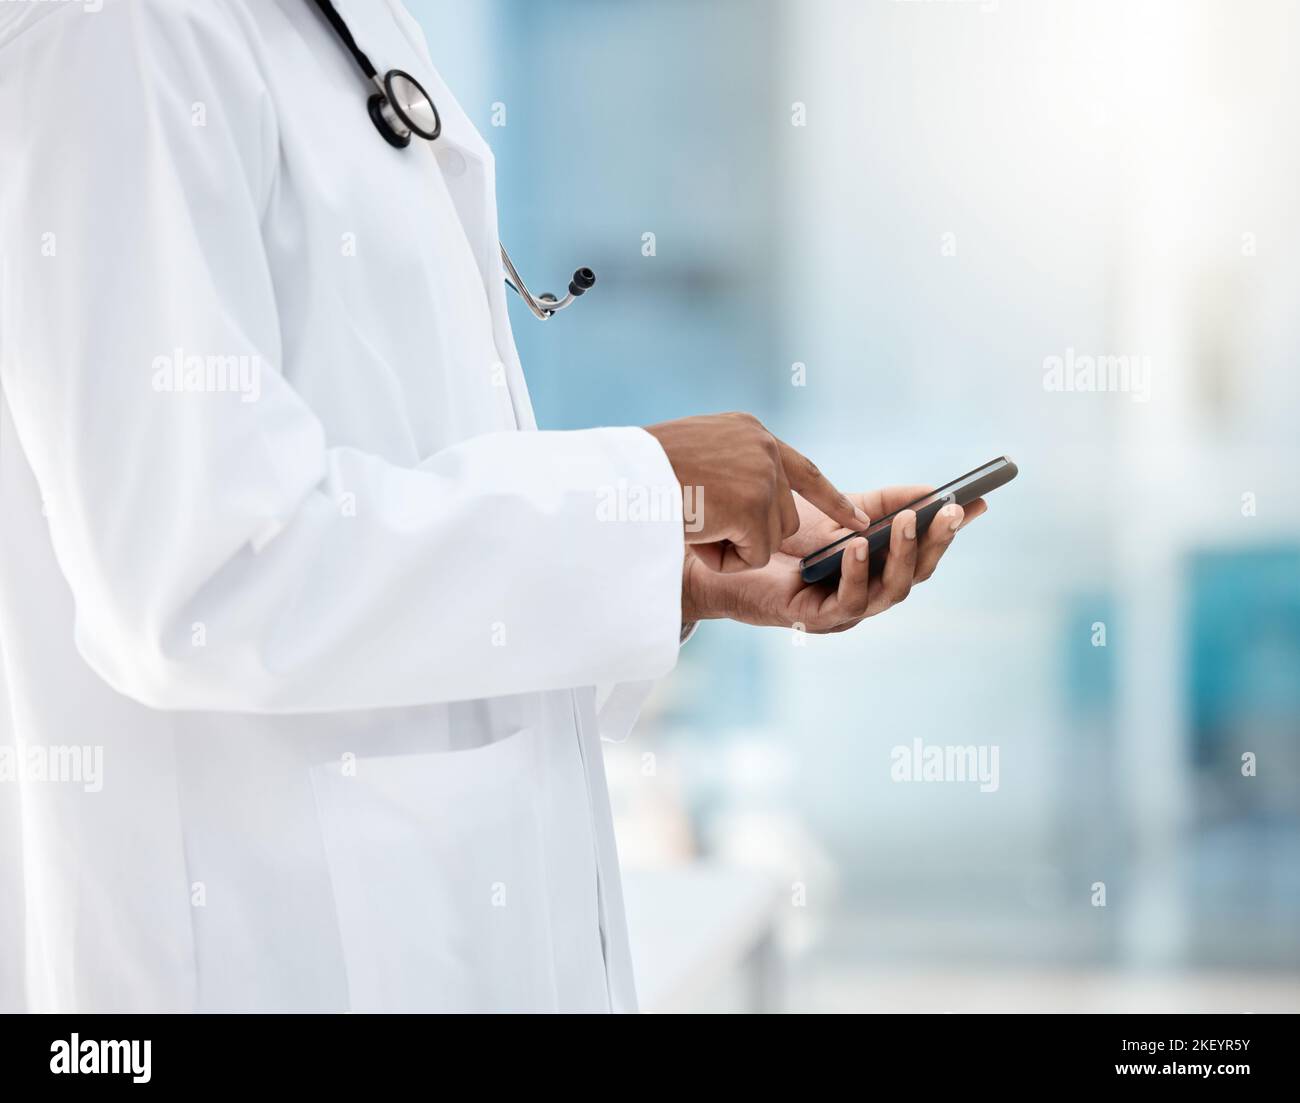 Telefon, Hände und Arzt auf einer medizinischen App oder einer Gesundheits-Website, die Feedback von Krankenhausforschungen eingibt oder per SMS schreibt. Mitarbeiter im Bereich Digital, Internet und Gesundheitswesen Stockfoto